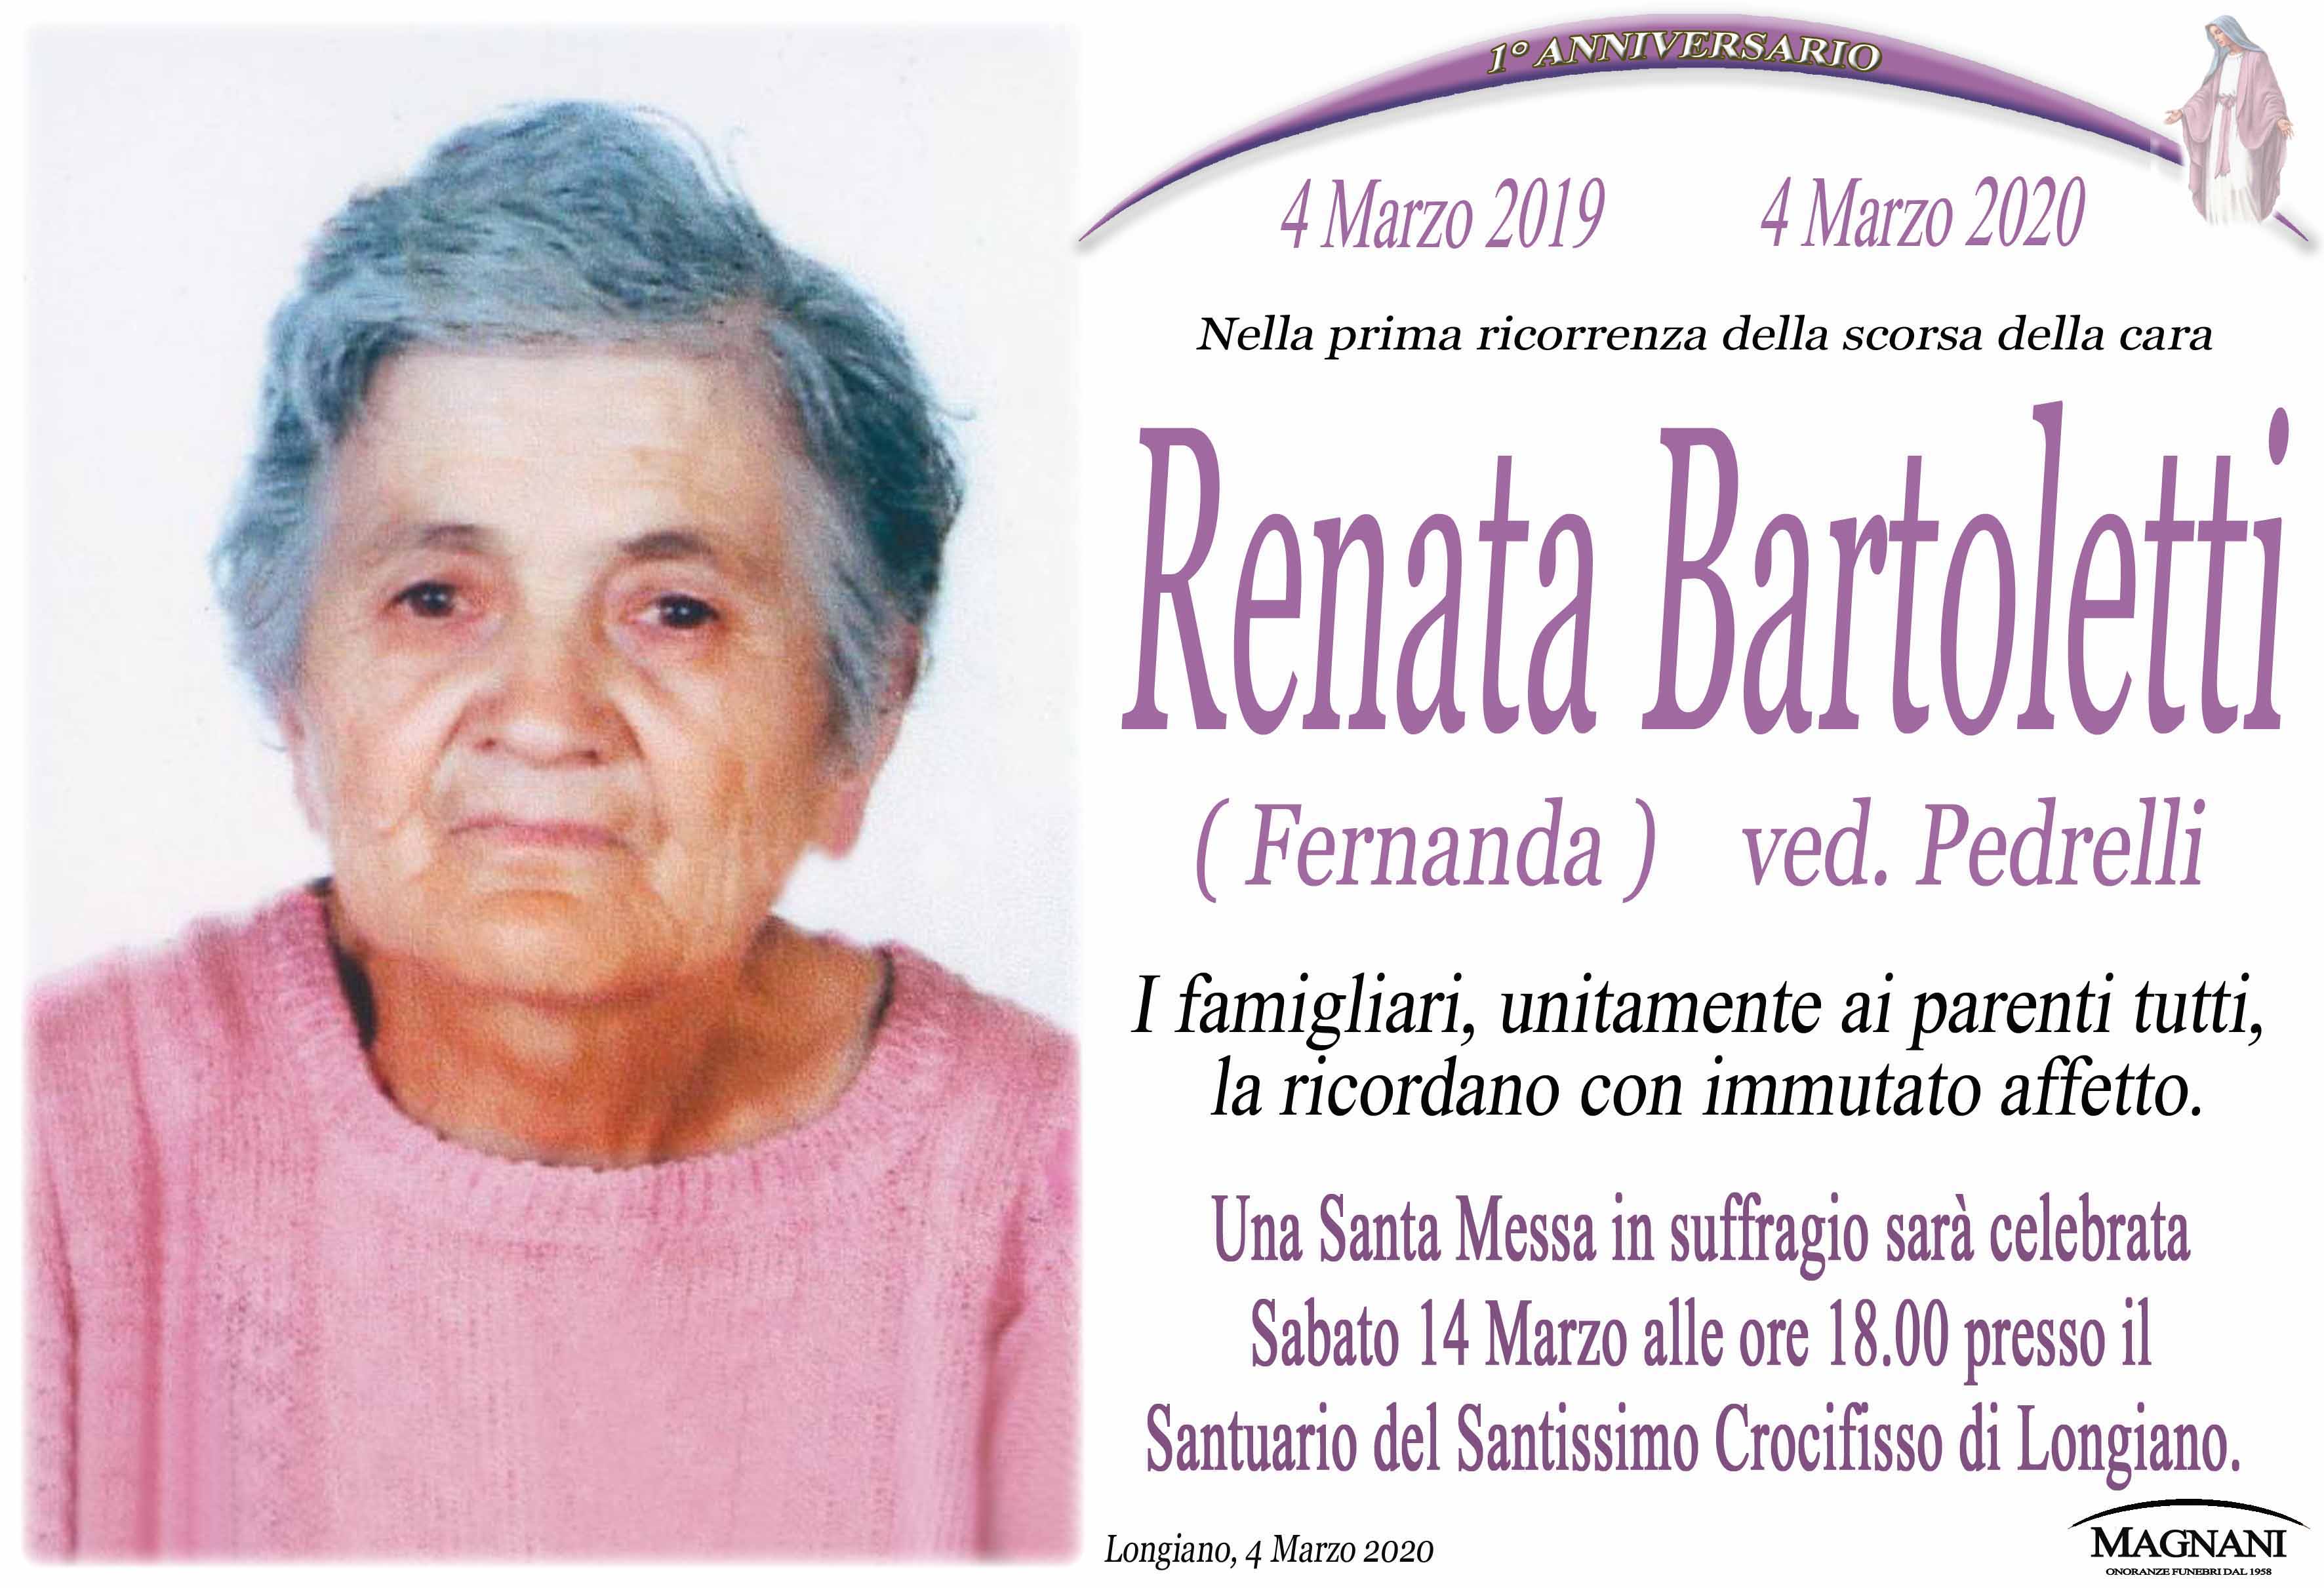 Renata Bartoletti